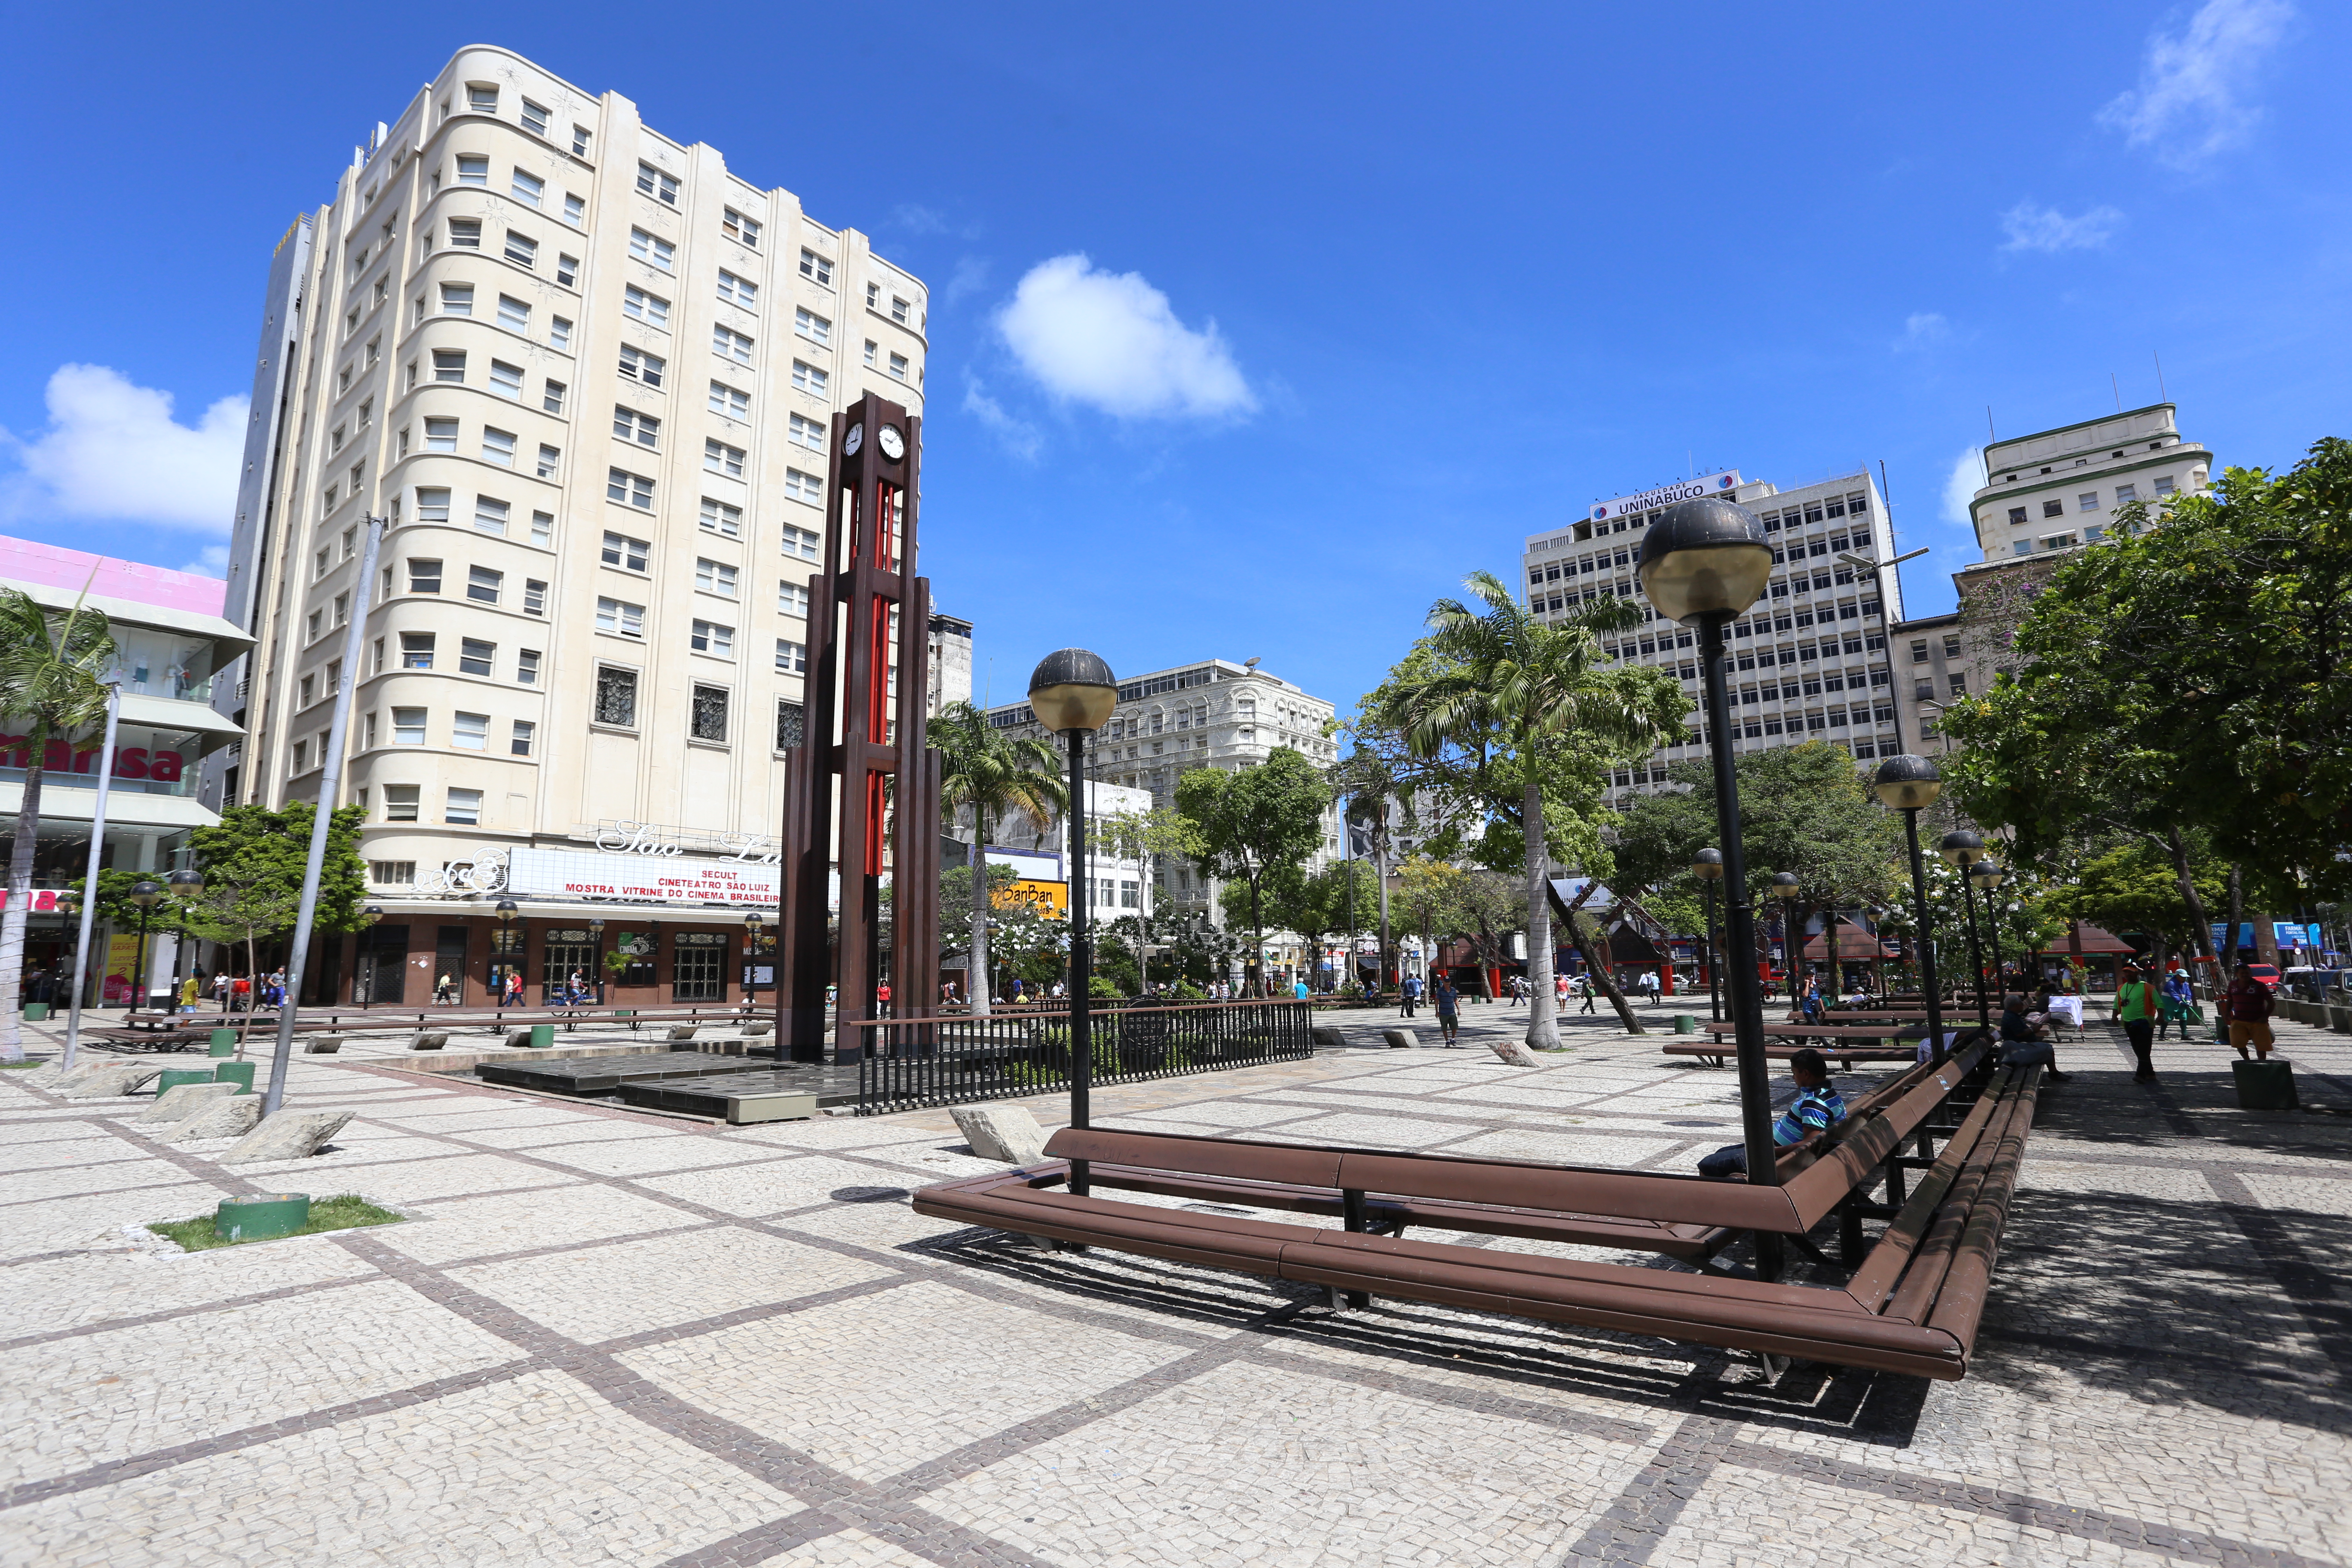 Praça do Ferreira com coluna da hora e bancos na praça e prédio do cine são luís ao fundo